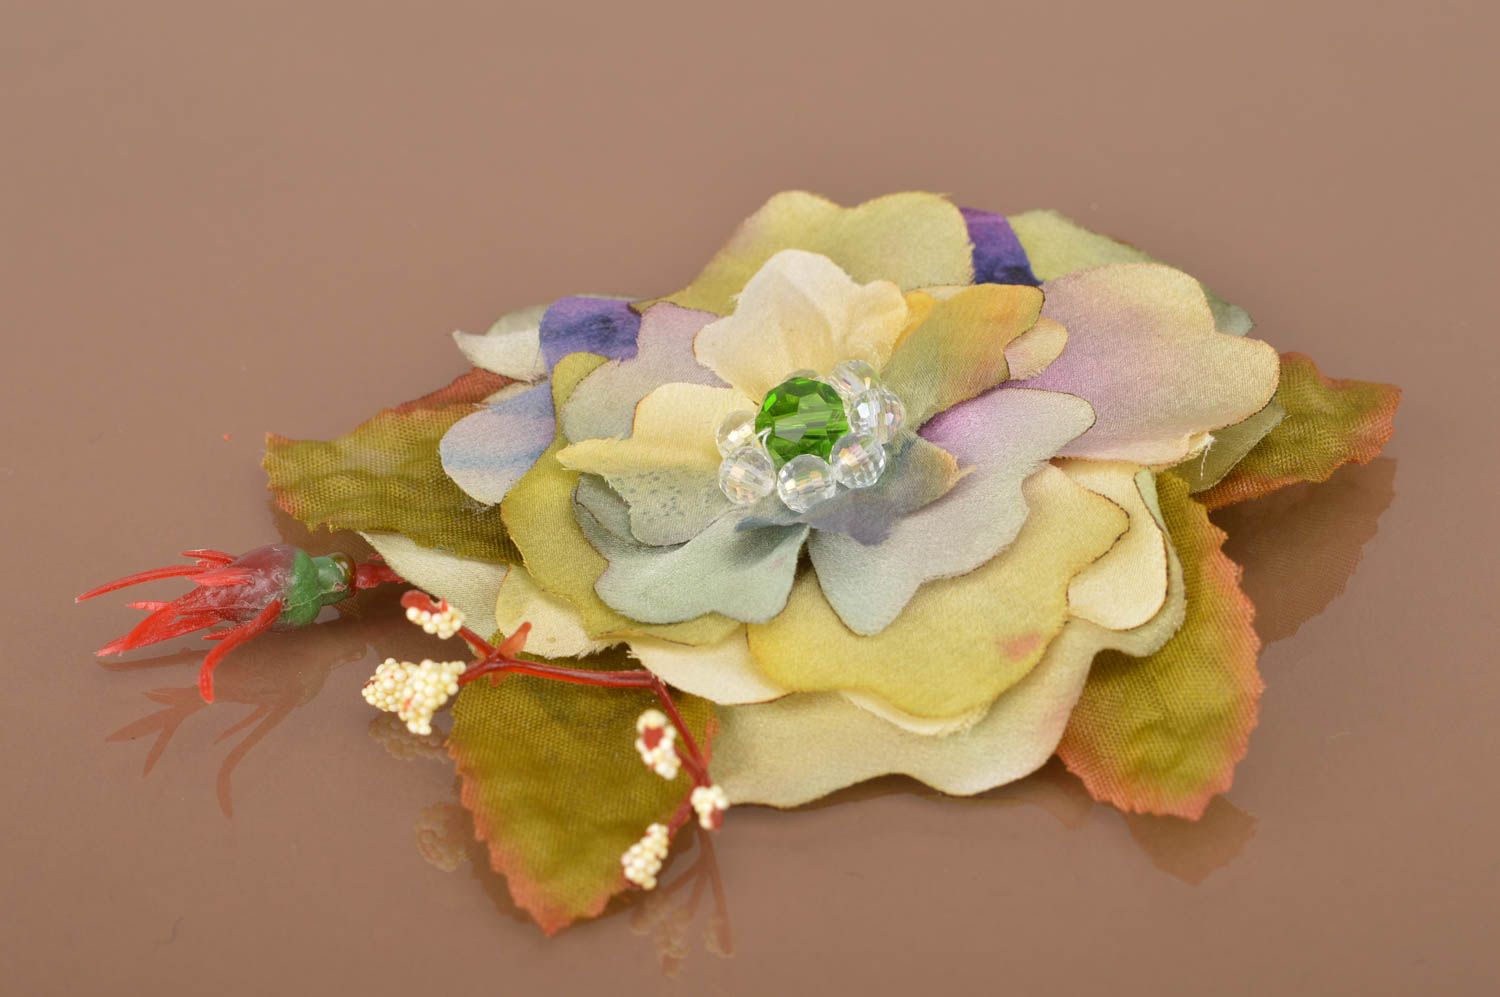 Брошь цветок из ткани небольшая необычной расцветки батик ручной работы фото 4